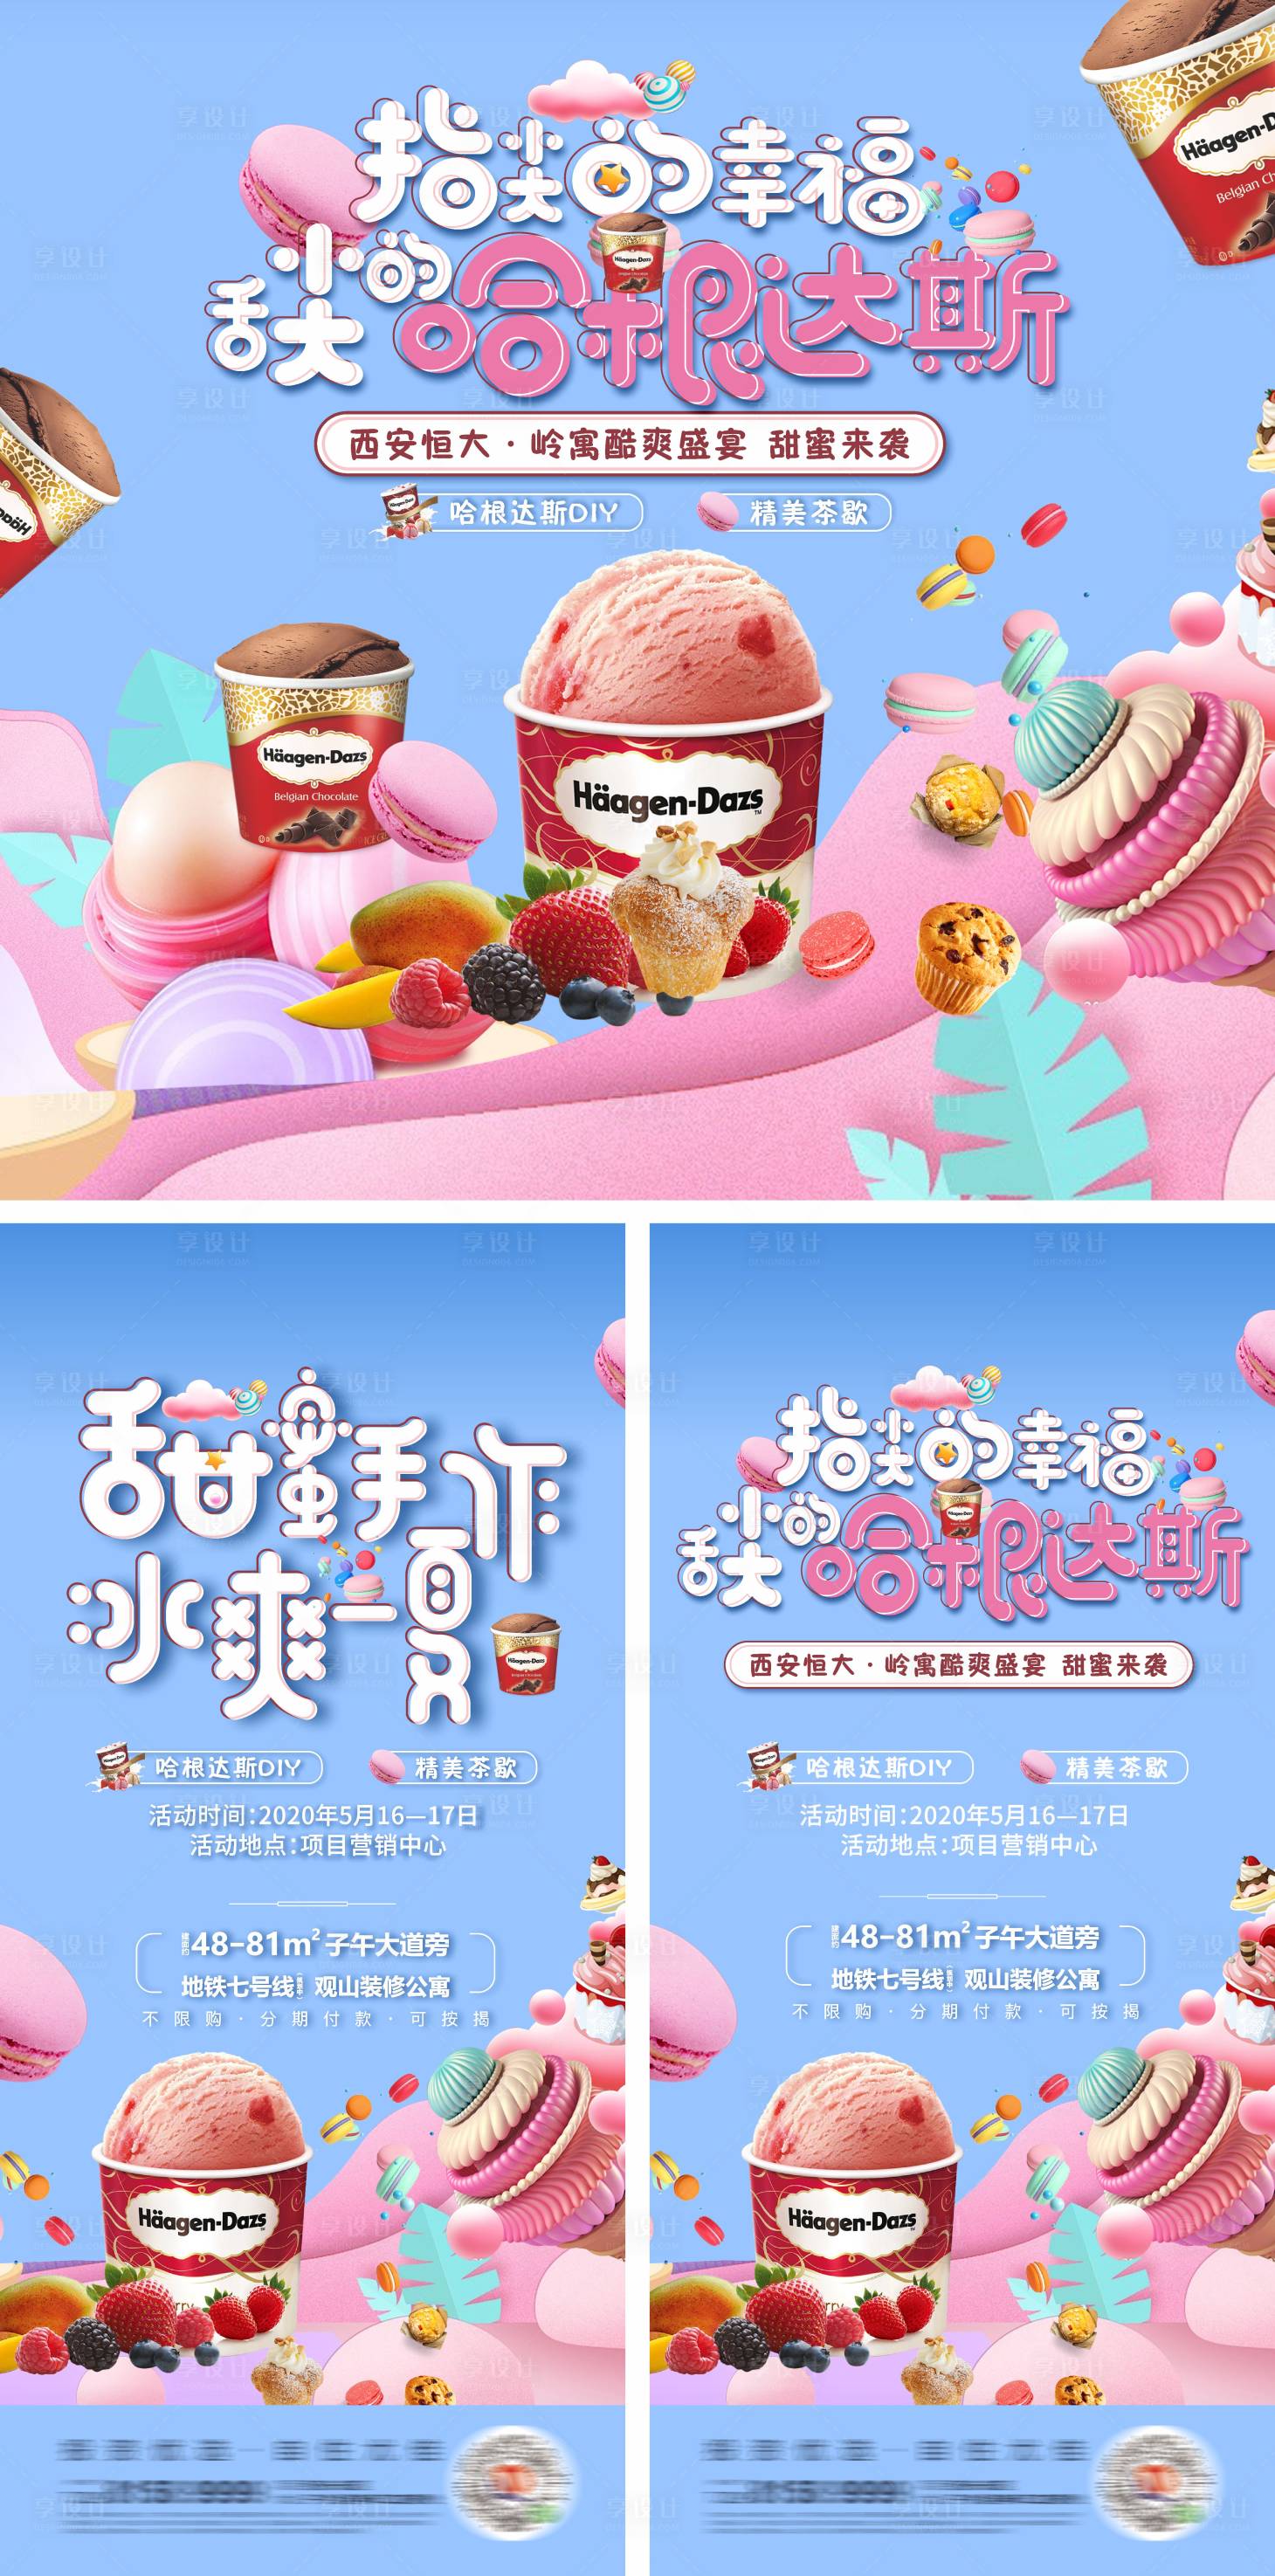 日本2018 哈根达斯冰淇淋限定口味大集合！ | MATCHA -日本旅游网络杂志